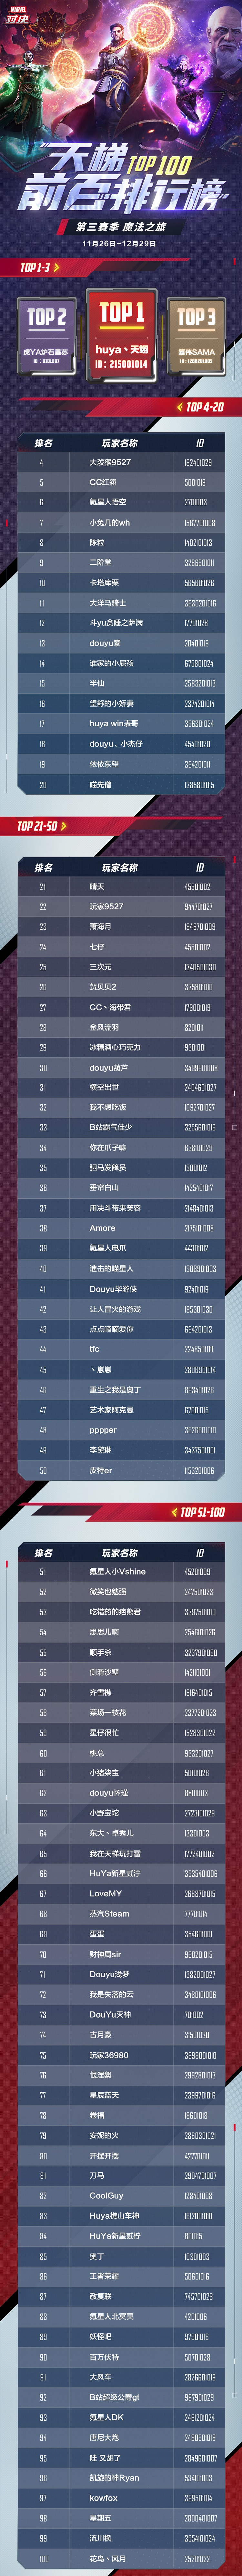 《漫威对决》S3赛季天梯Top100排行榜